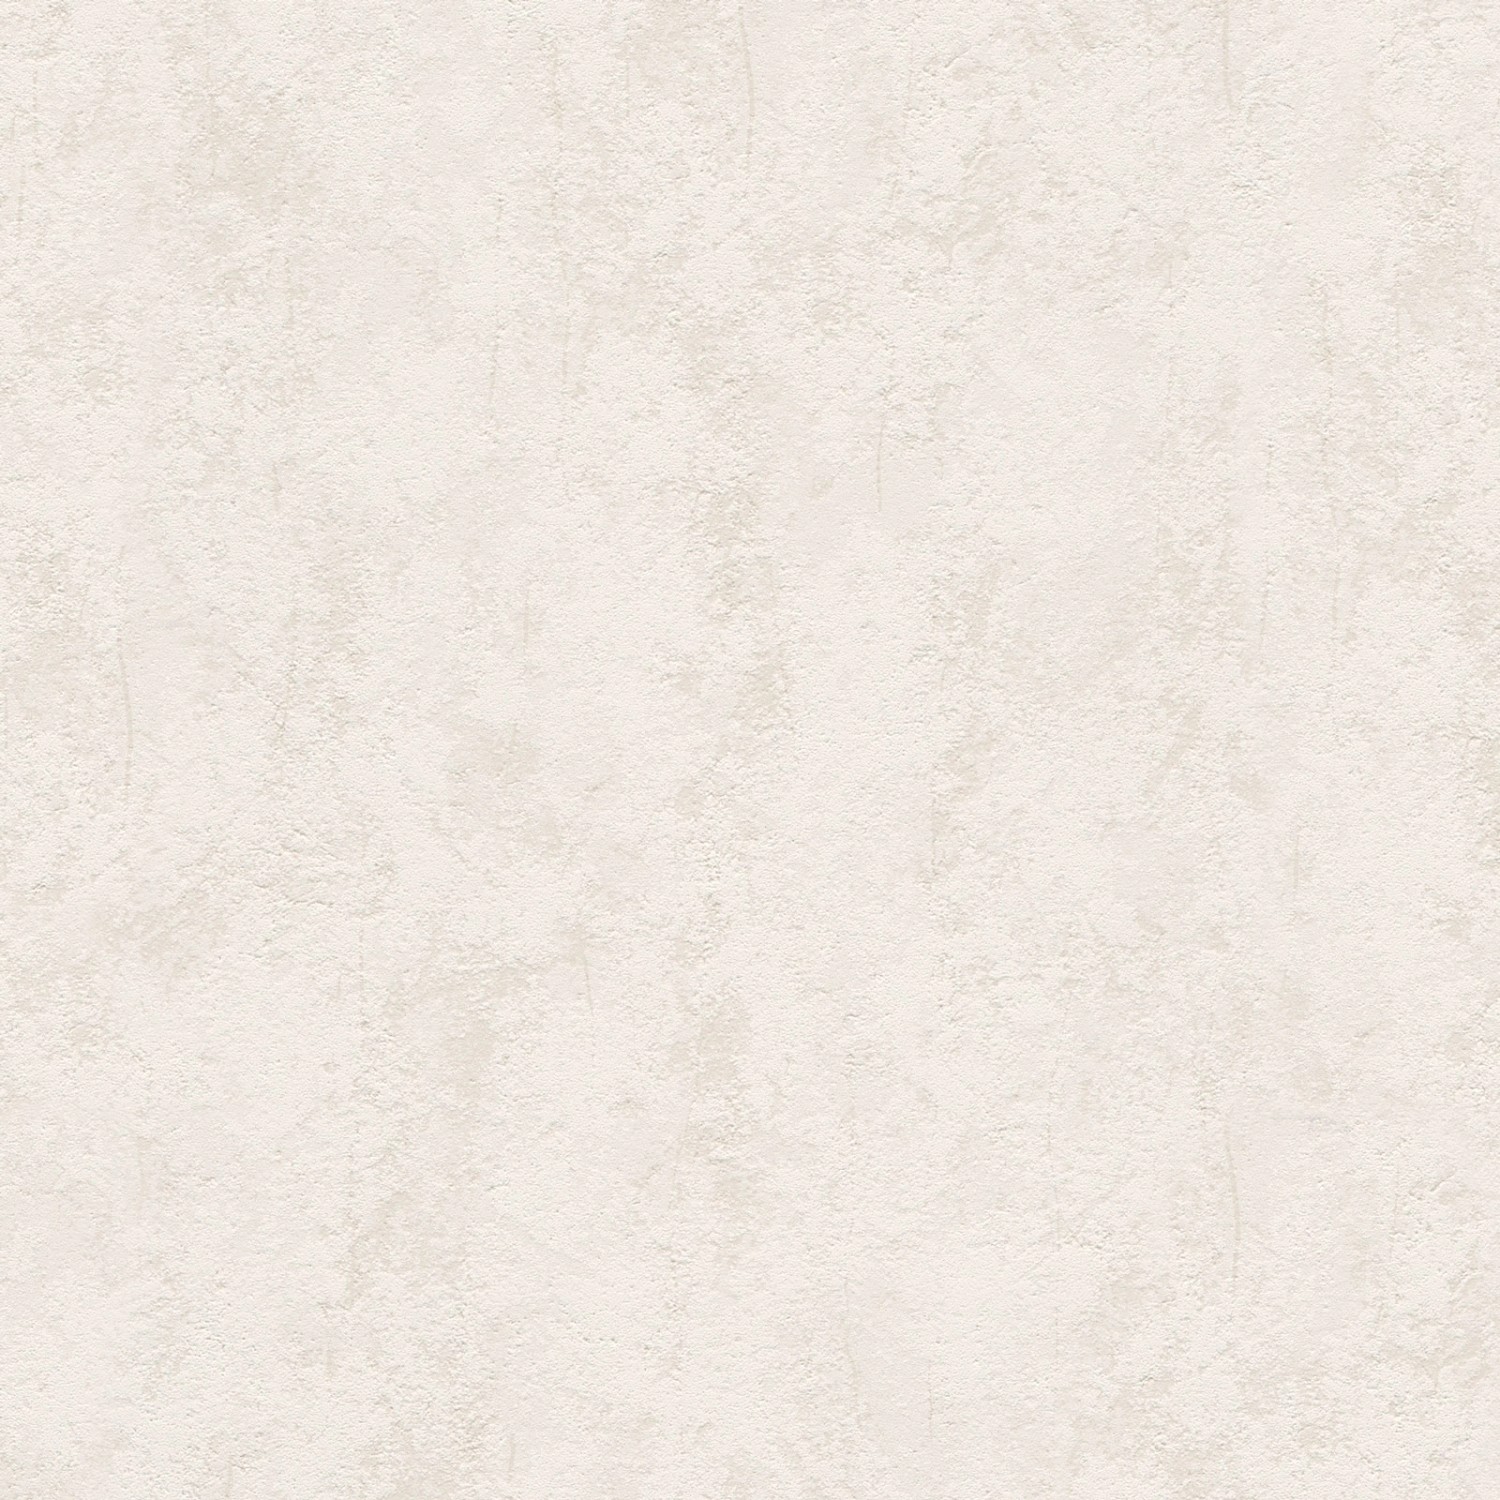 Bricoflor Helle Strukturtapete in Putzoptik Creme Weiße Tapete mit Vinyl Putz Struktur Schlicht Einfarbige Vliestapete D